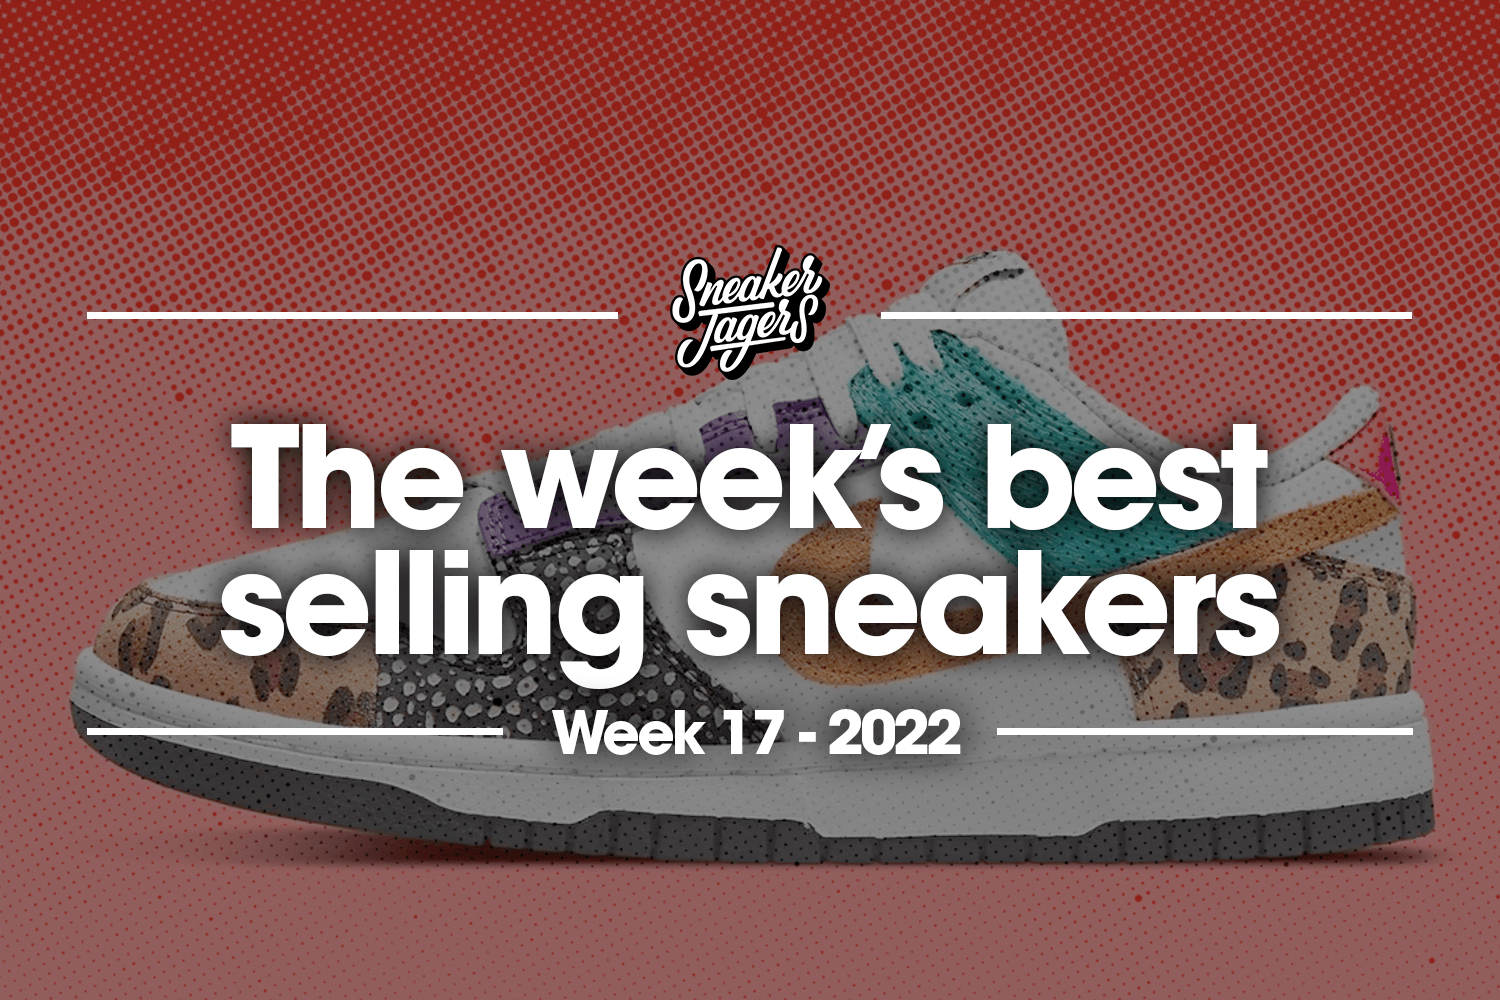 De 5 bestverkochte sneakers van week 17